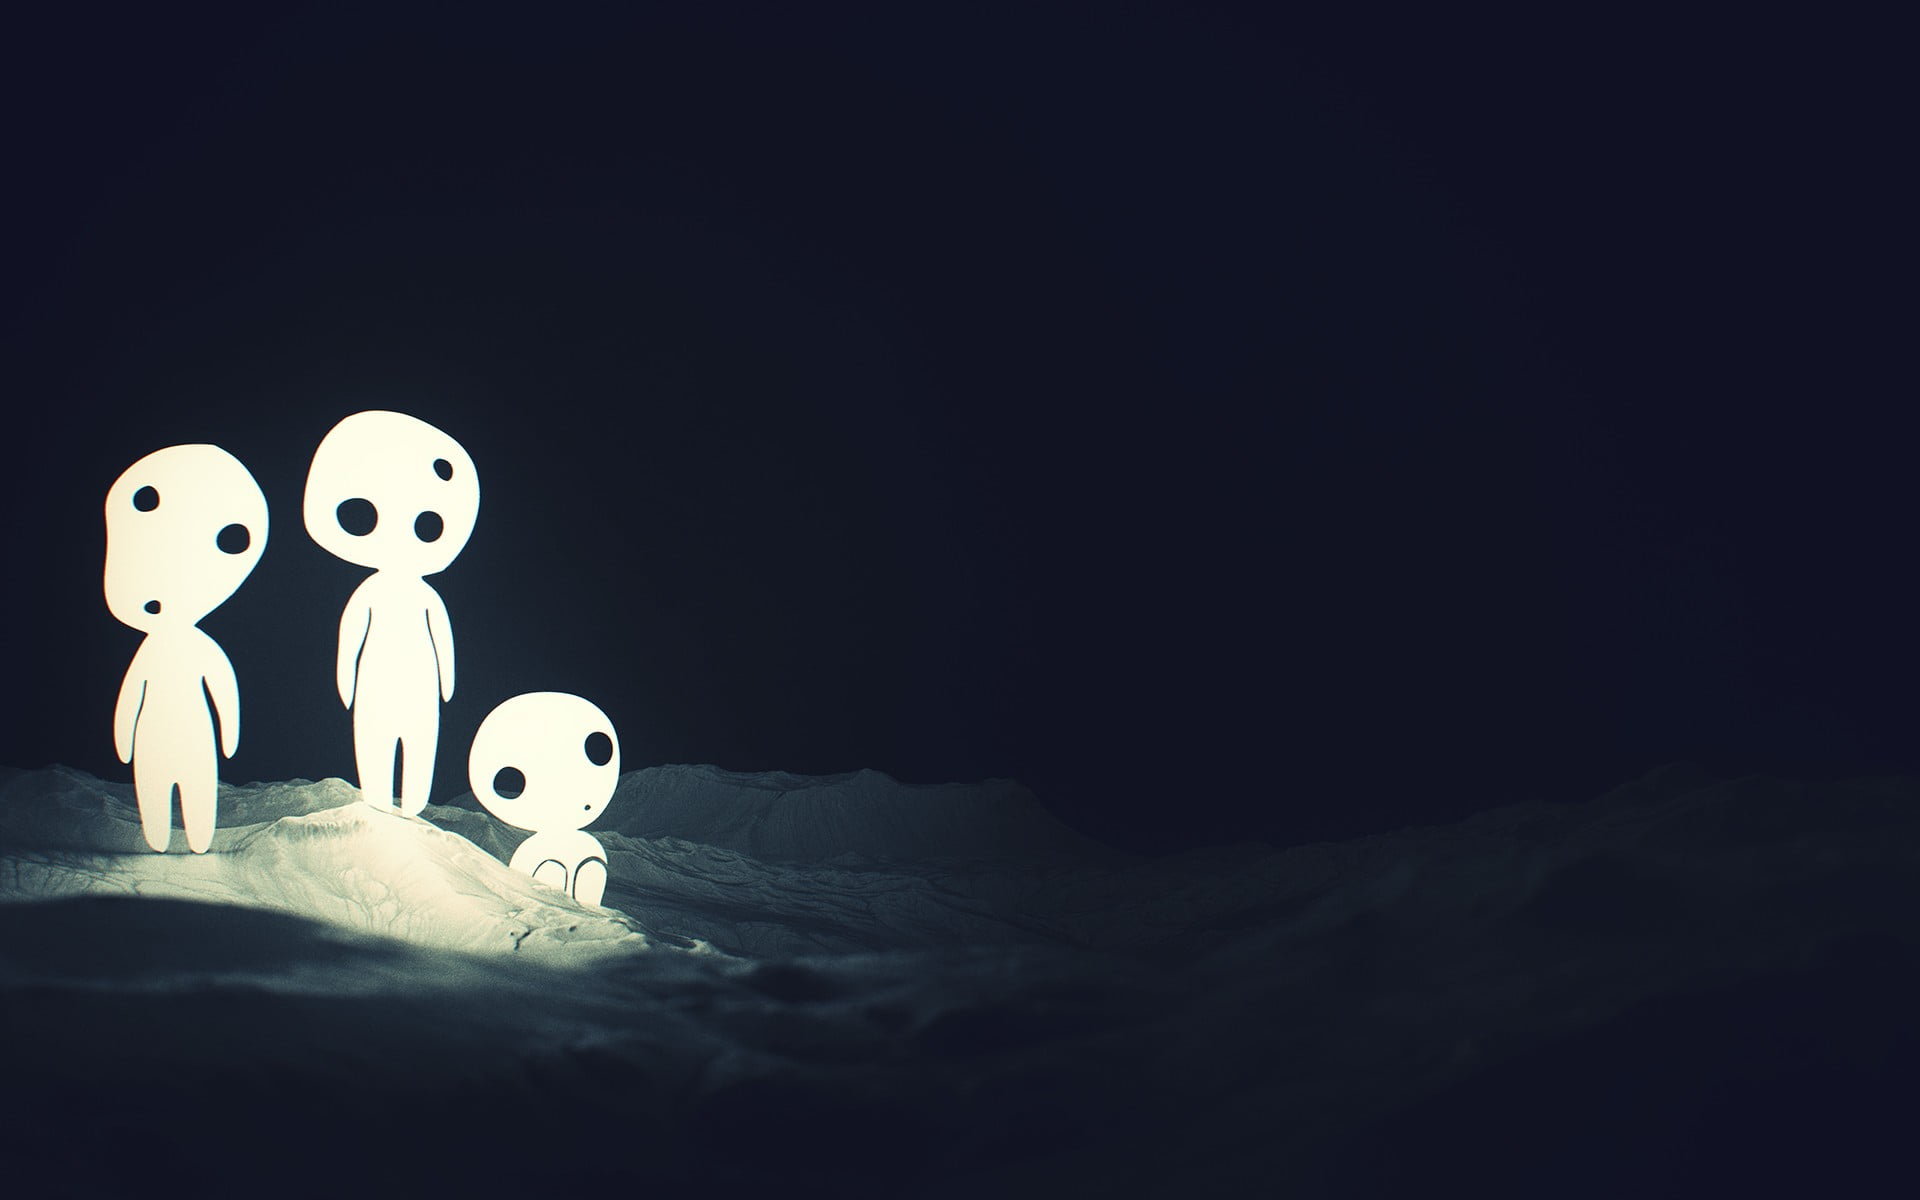 three white ghost illustration, digital art, SliD3, Studio Ghibli